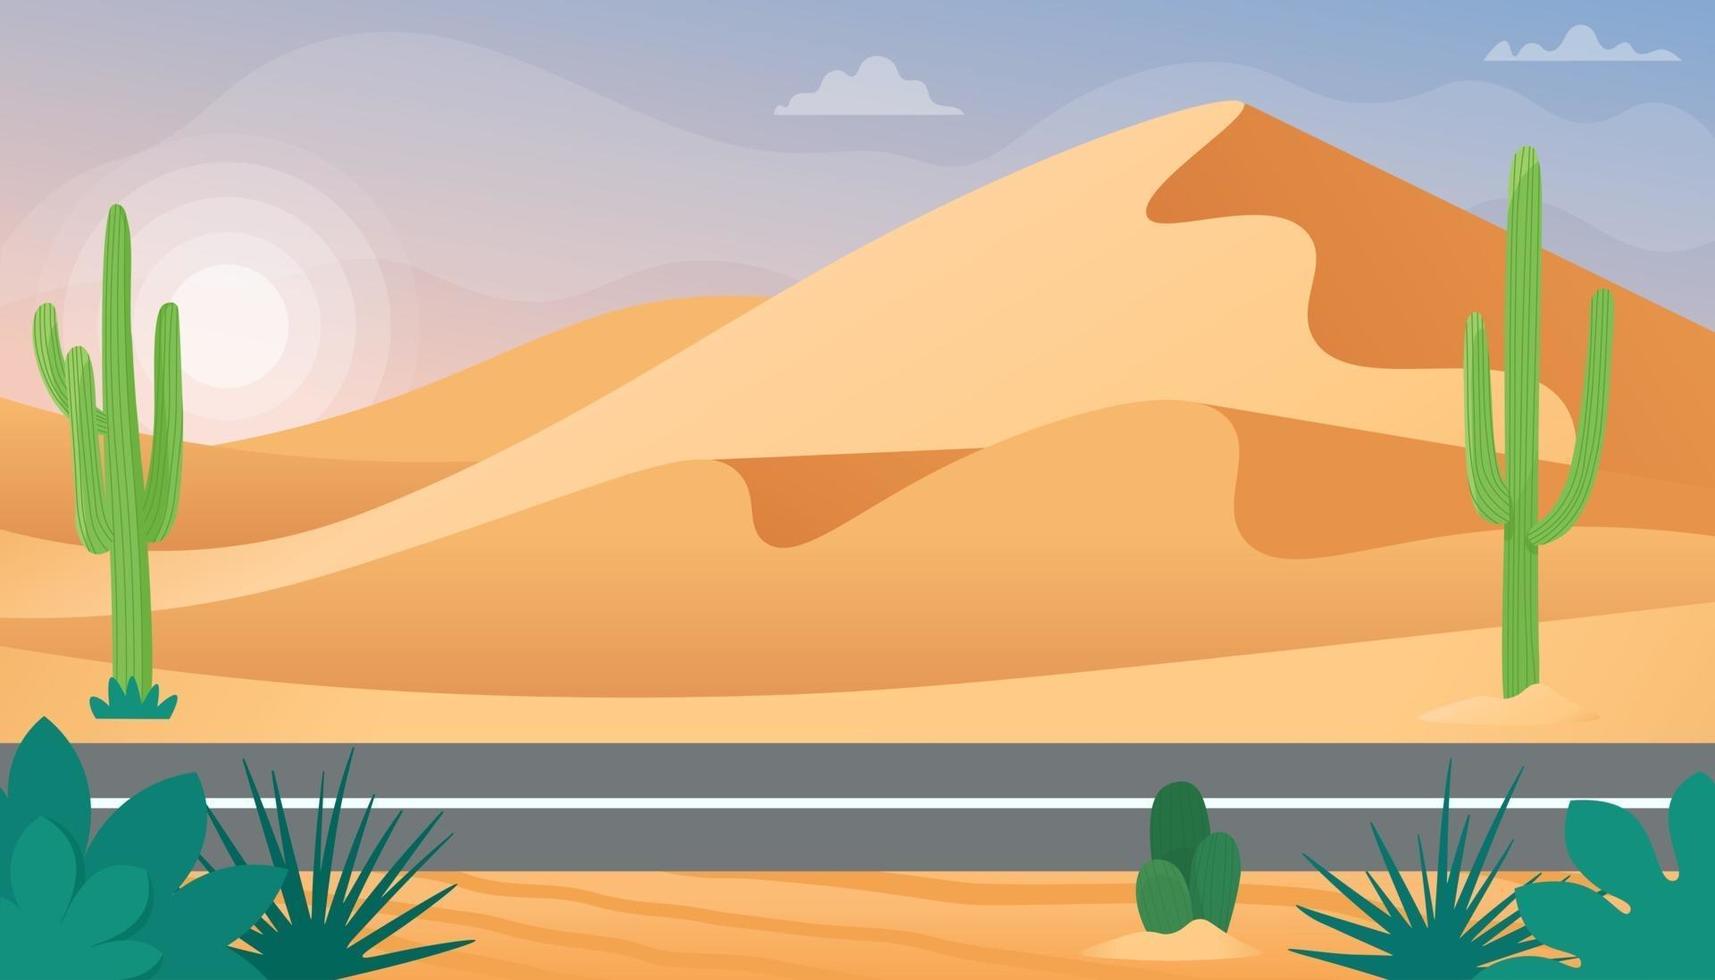 paisaje desértico con dunas de arena y cactus. ilustración vectorial en estilo plano vector